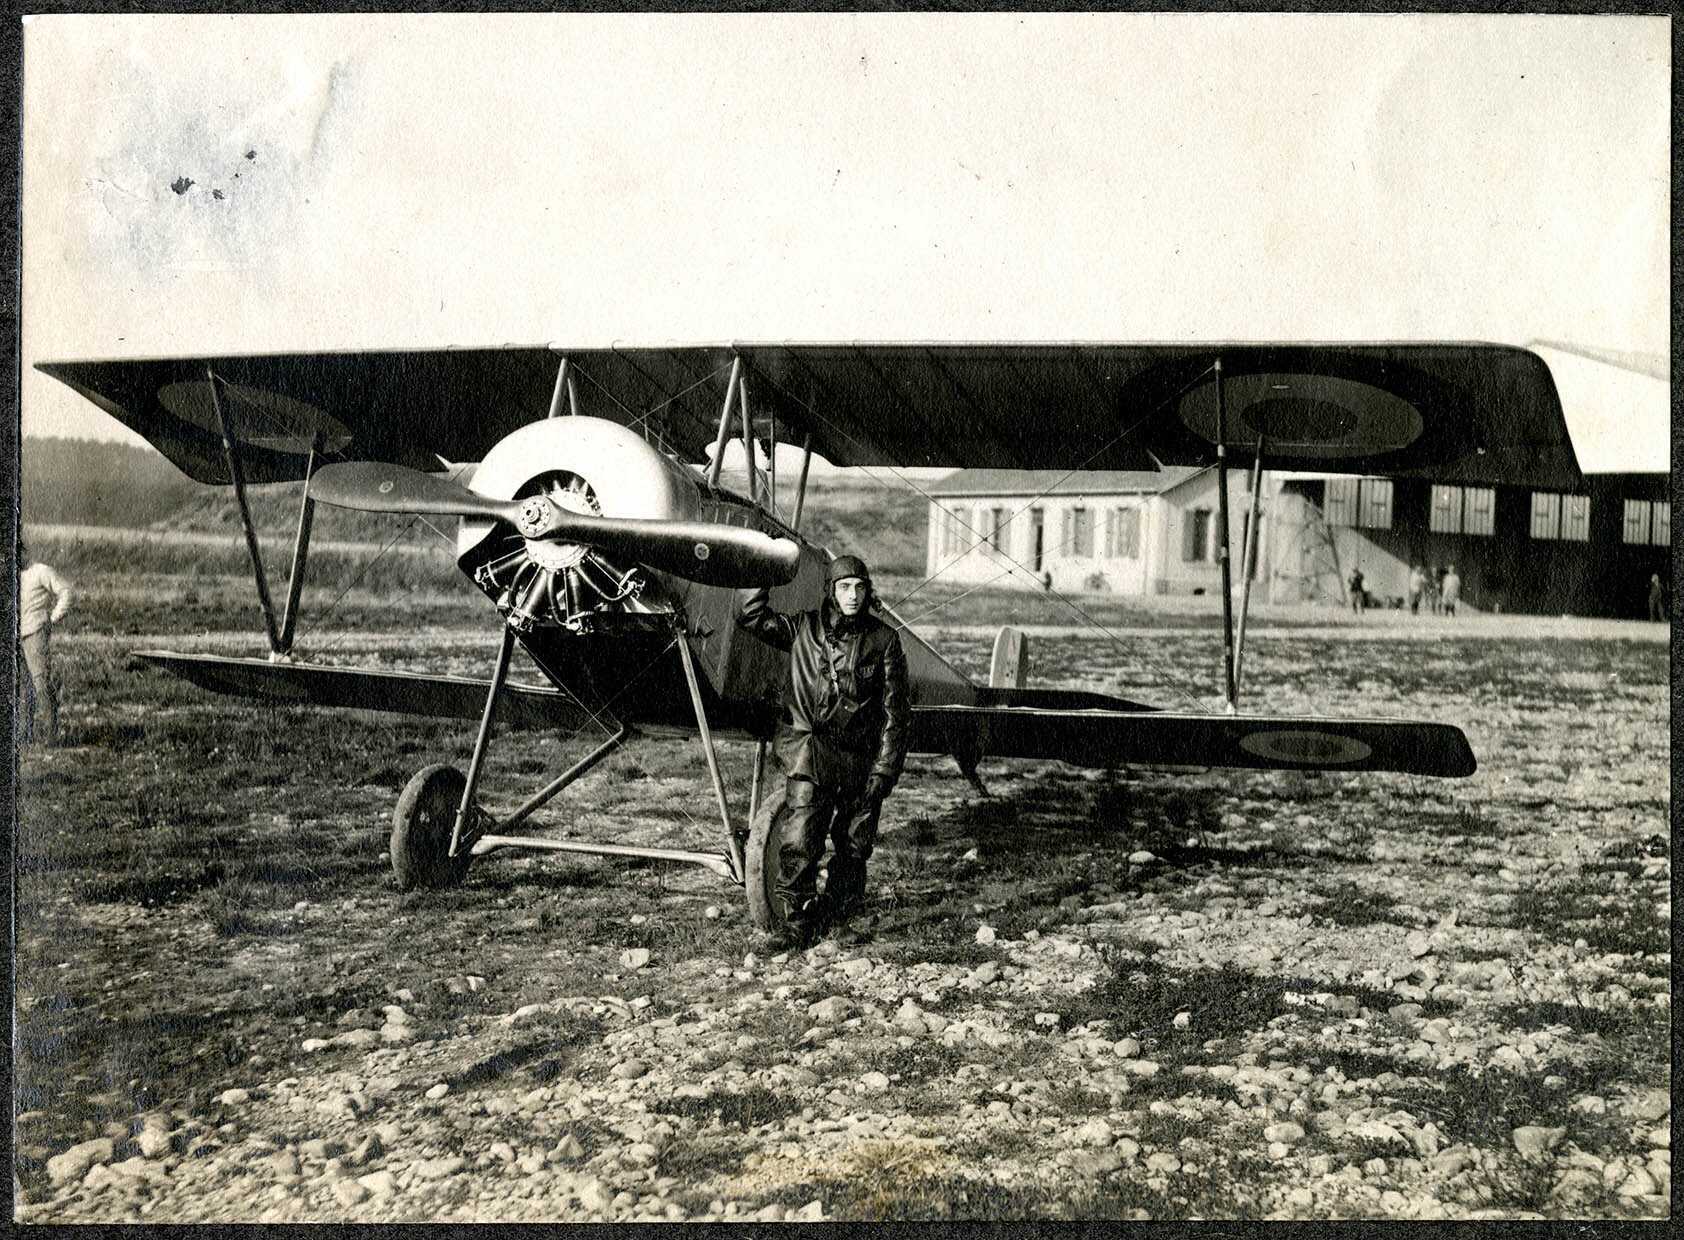 Belfort, Centre aéronautique militaire, Champ-de-Mars (Parc-à-Ballons), un avion de chasse français.